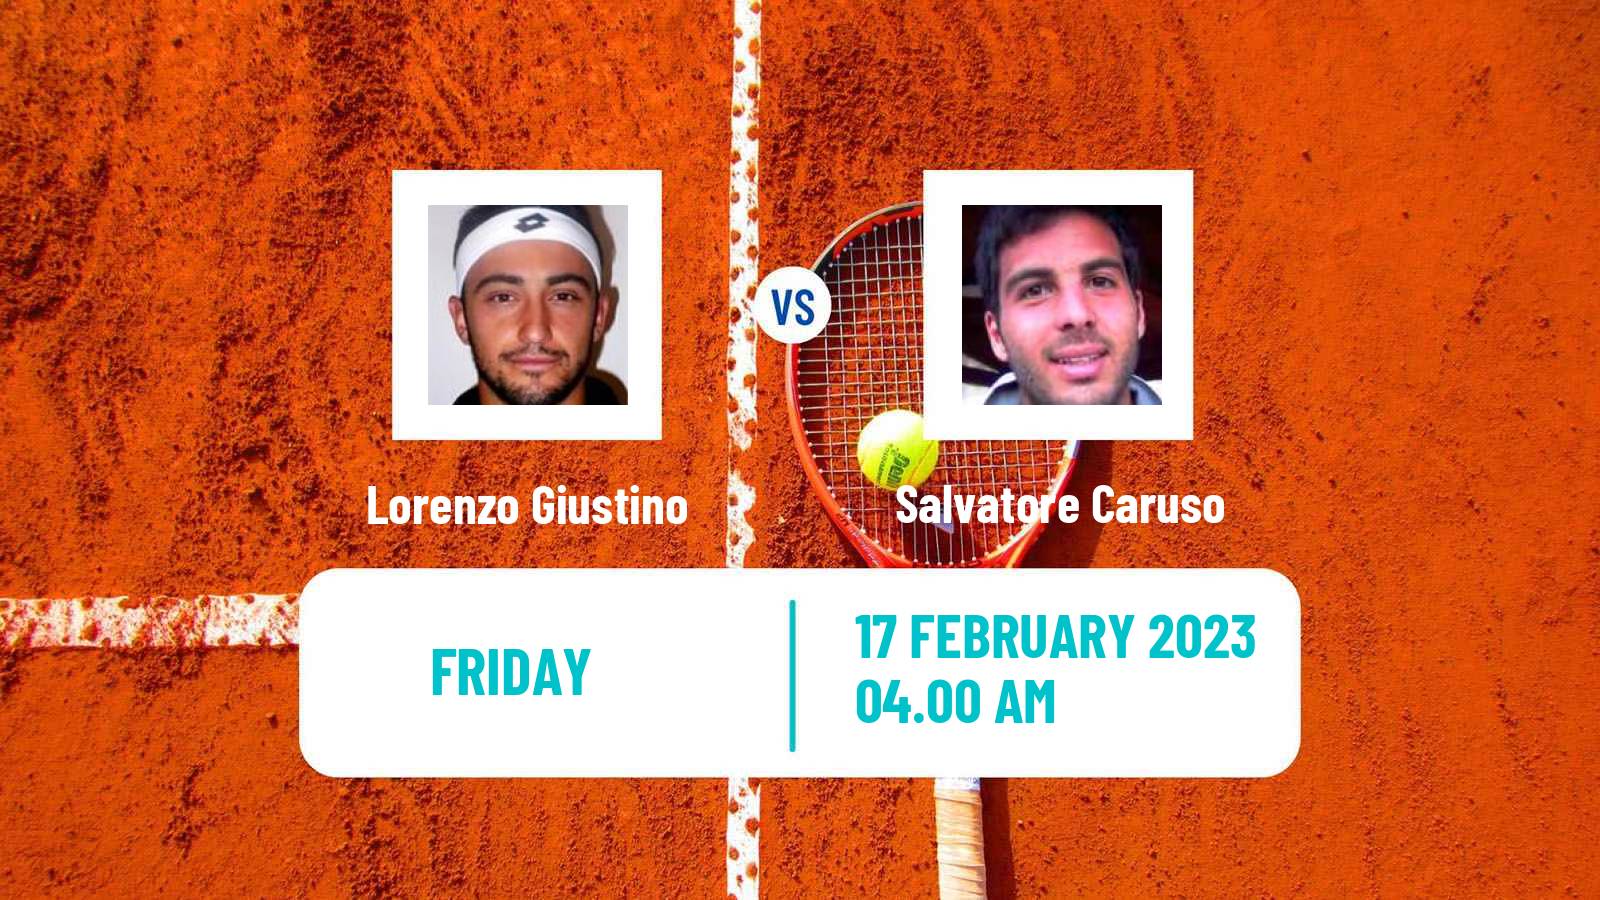 Tennis ATP Challenger Lorenzo Giustino - Salvatore Caruso